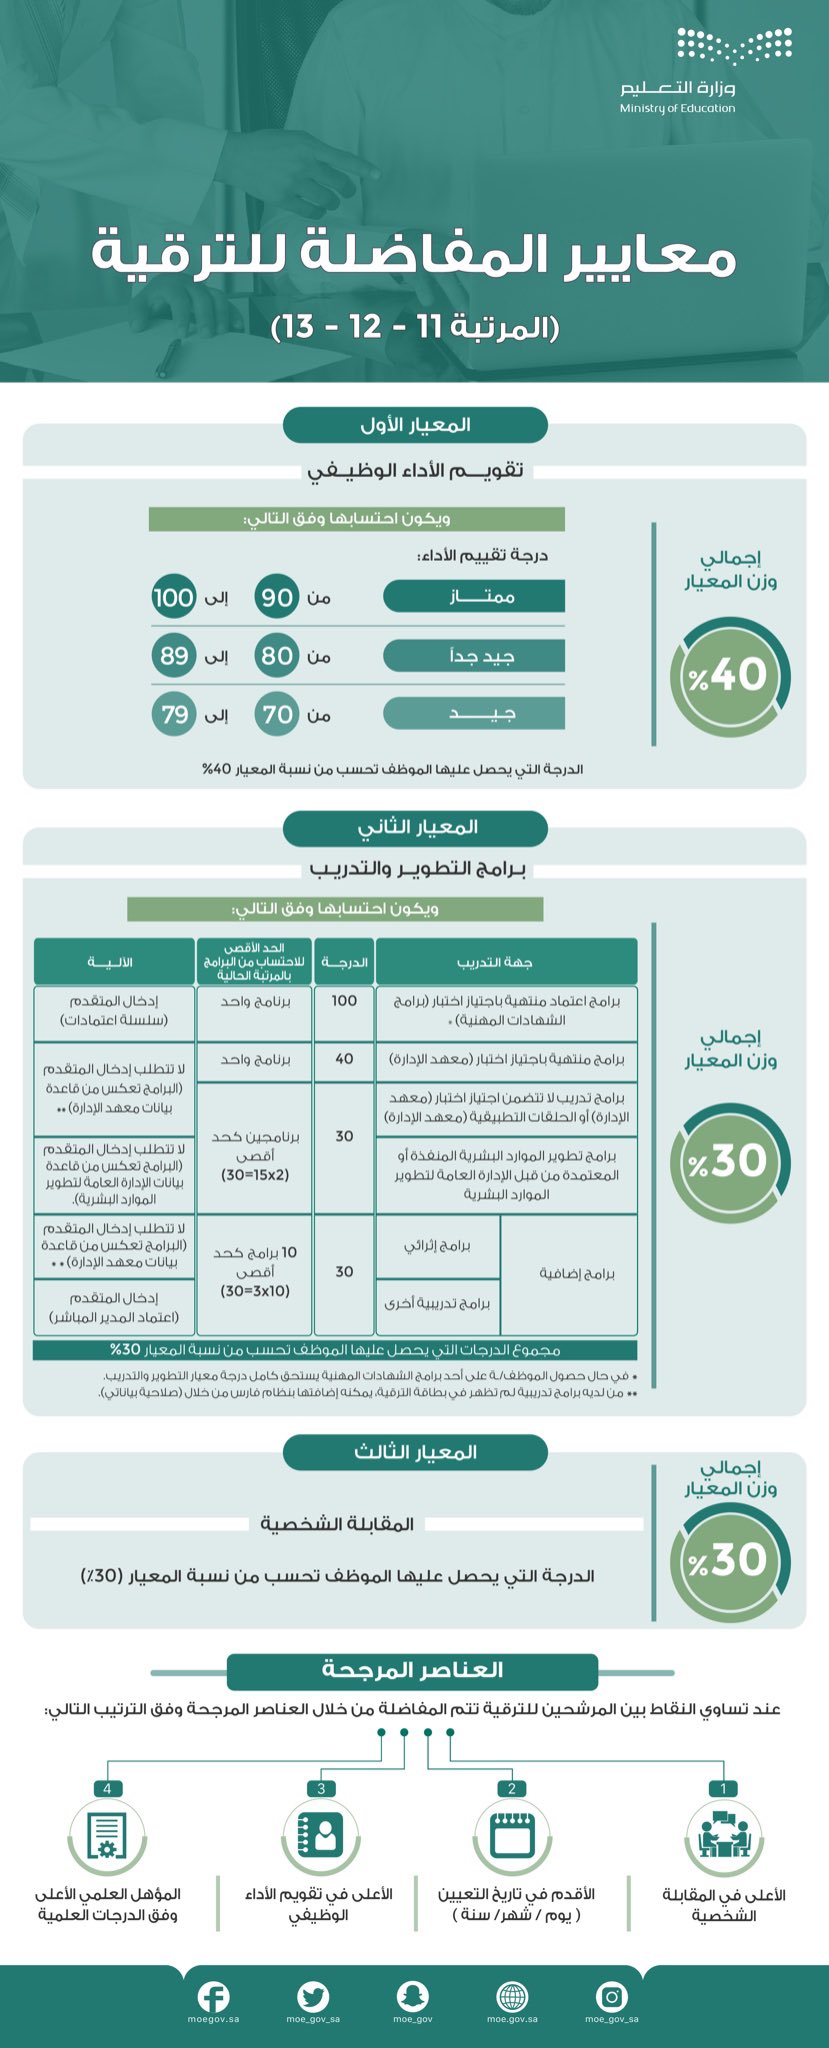 وزارة التعليم السعودية تفتح بطاقات الترقية على نظام فارس ومنصة بياناتي الوظيفية لعام 1442